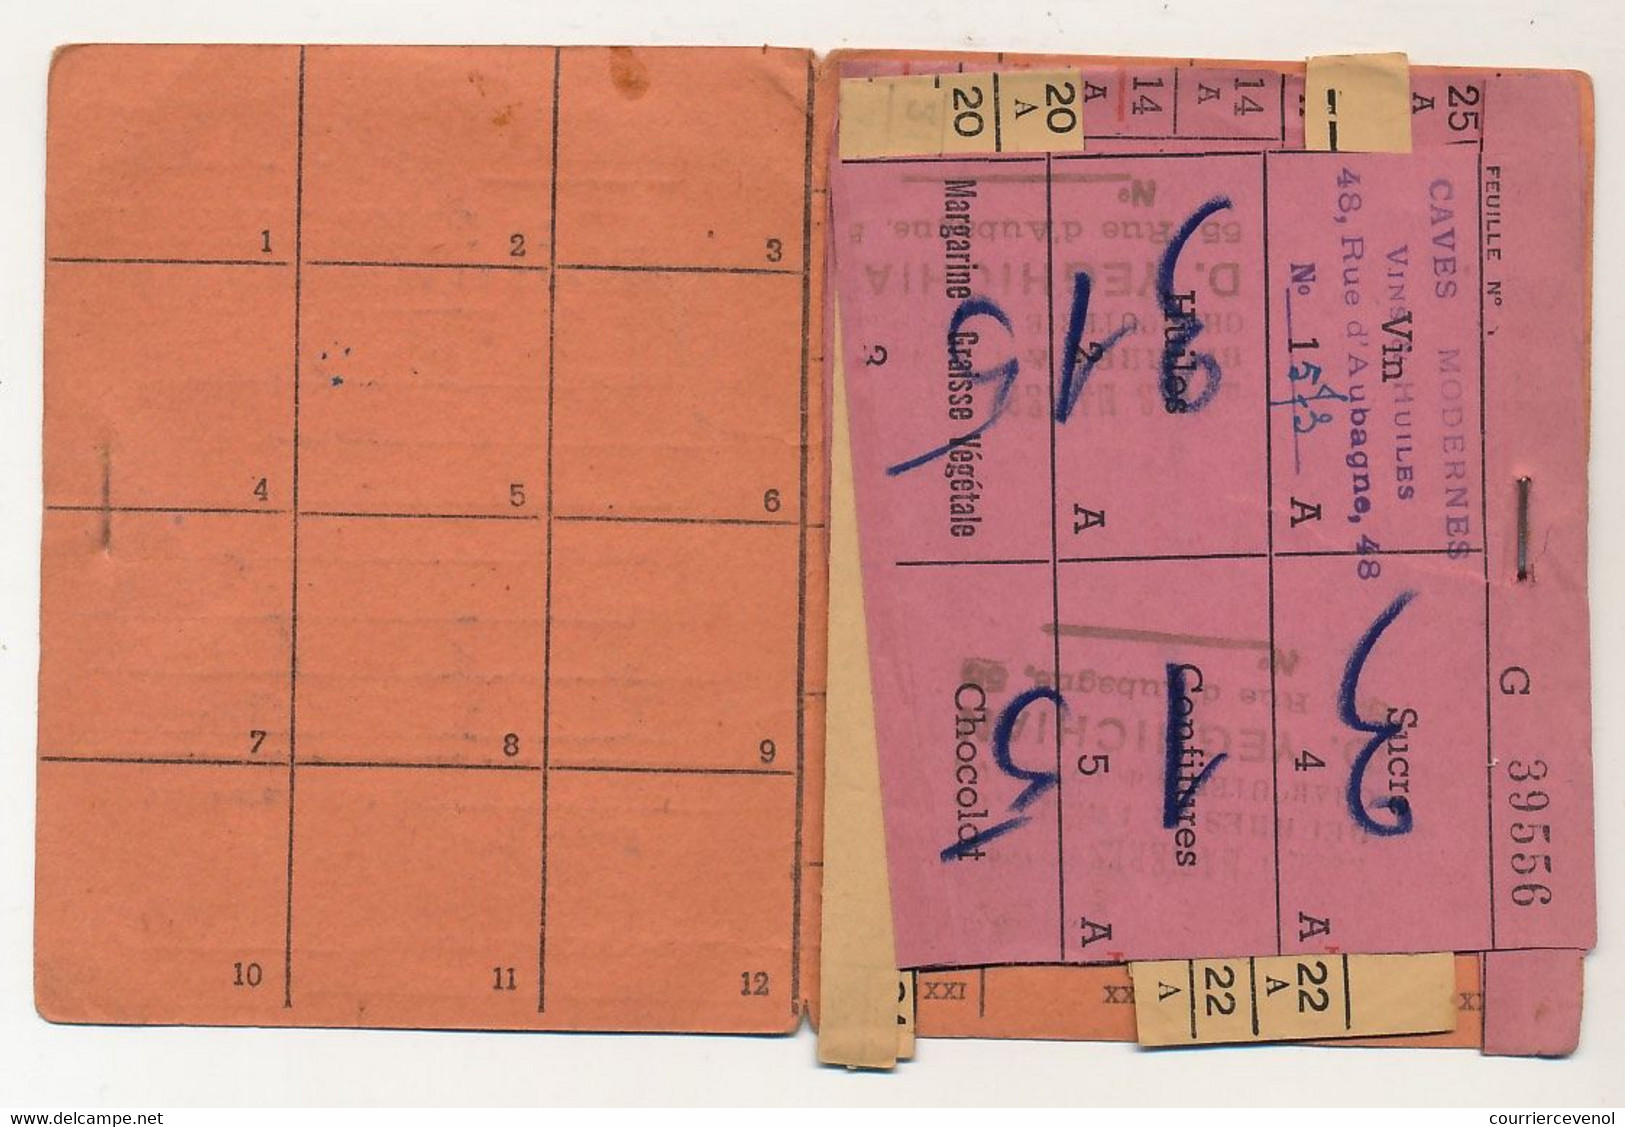 FRANCE - Etat Francais, Ravitaillement Général - Carnet De Fournisseurs - MARSEILLE 1942 Avec Divers Tickets - Documents Historiques